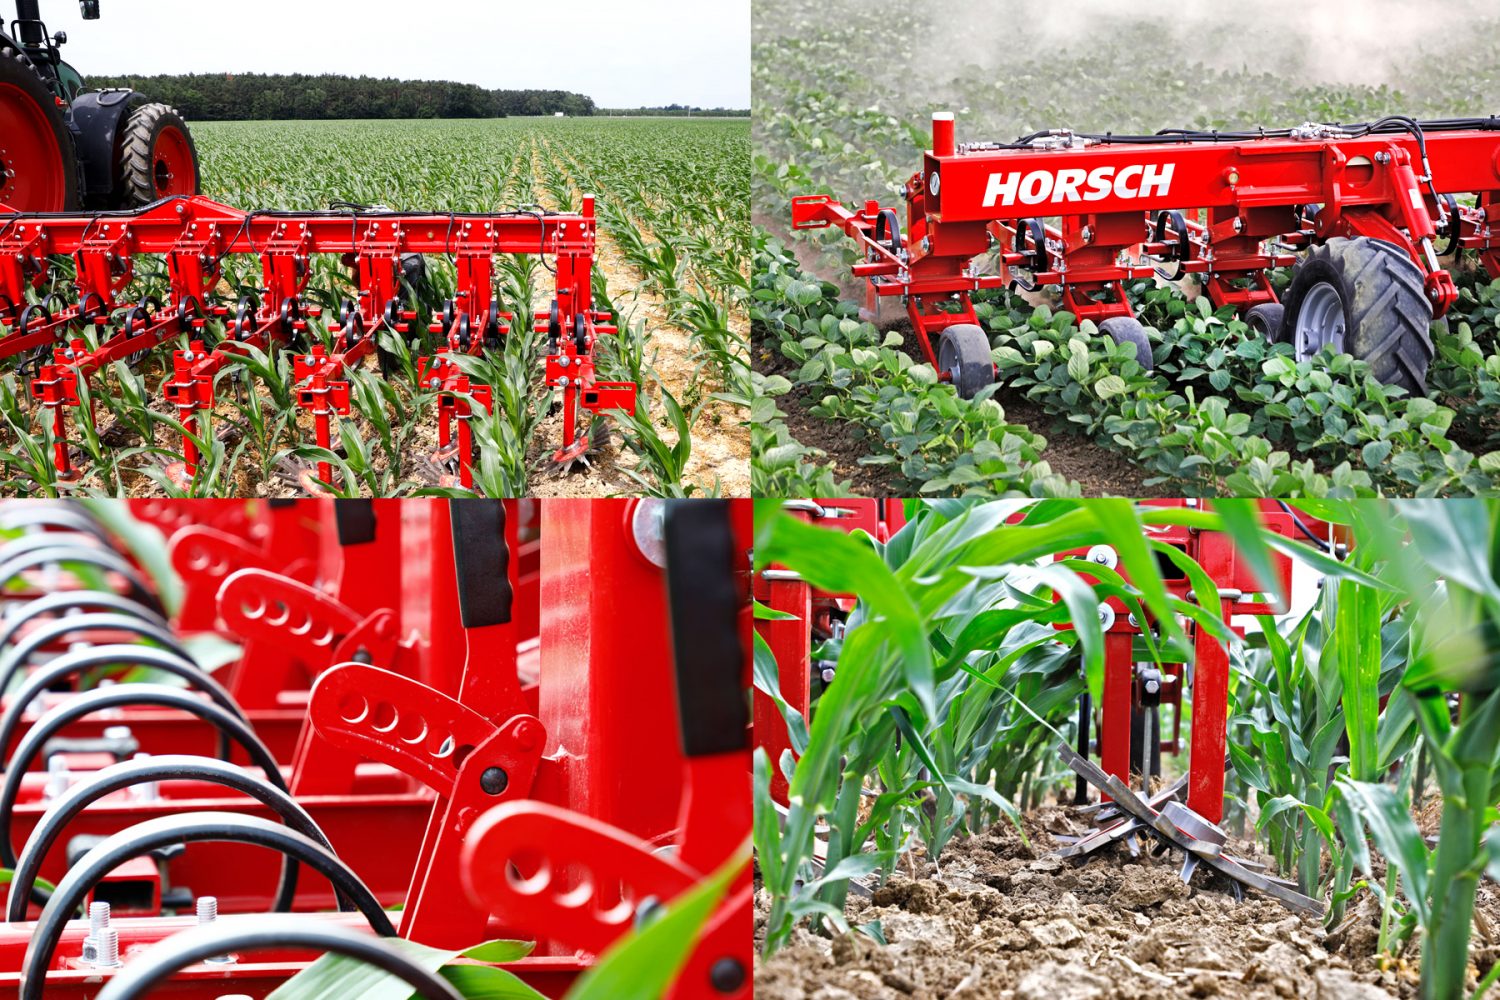 Utilaje agricole marca Horsch destinate agriculturii regenerative